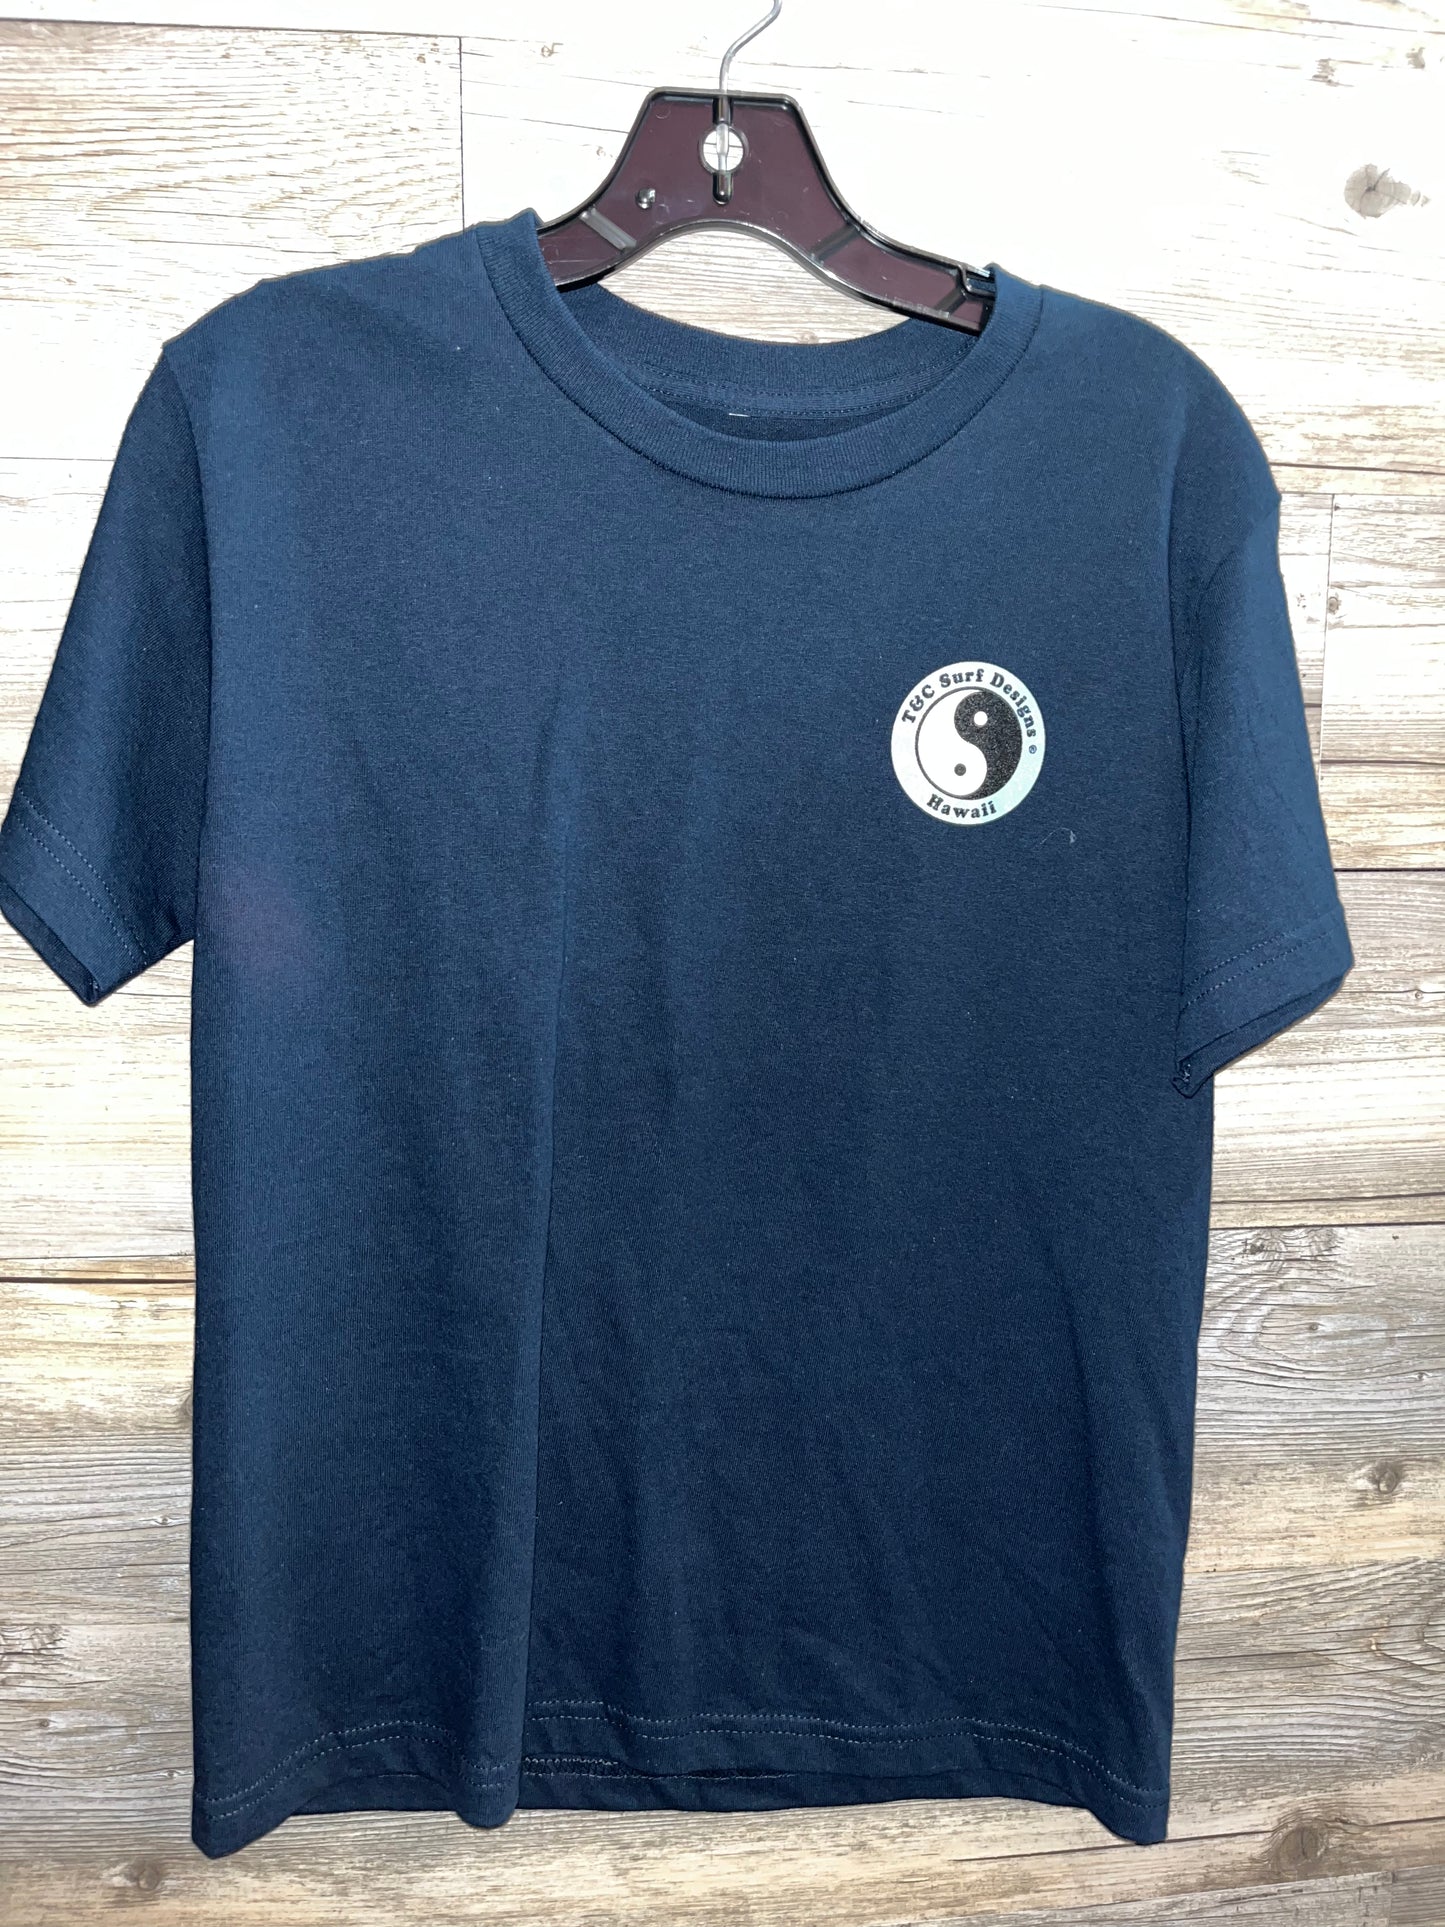 T&C Surf Design T-Shirt, Size 10-12